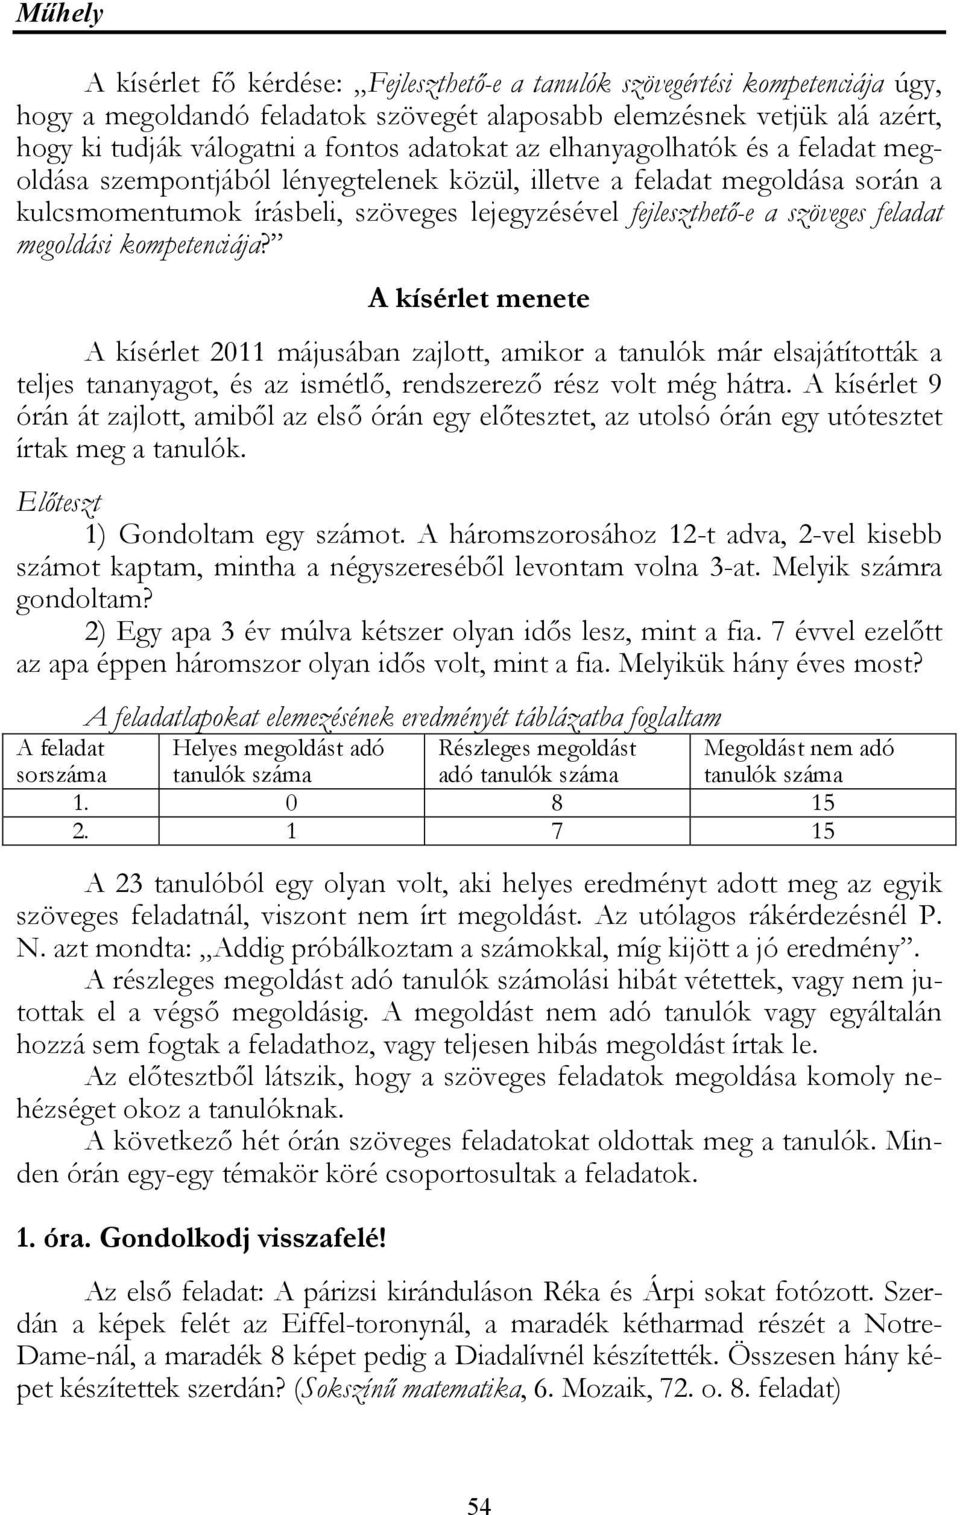 Szöveges feladatok a matematikai didaktikában - PDF Ingyenes letöltés